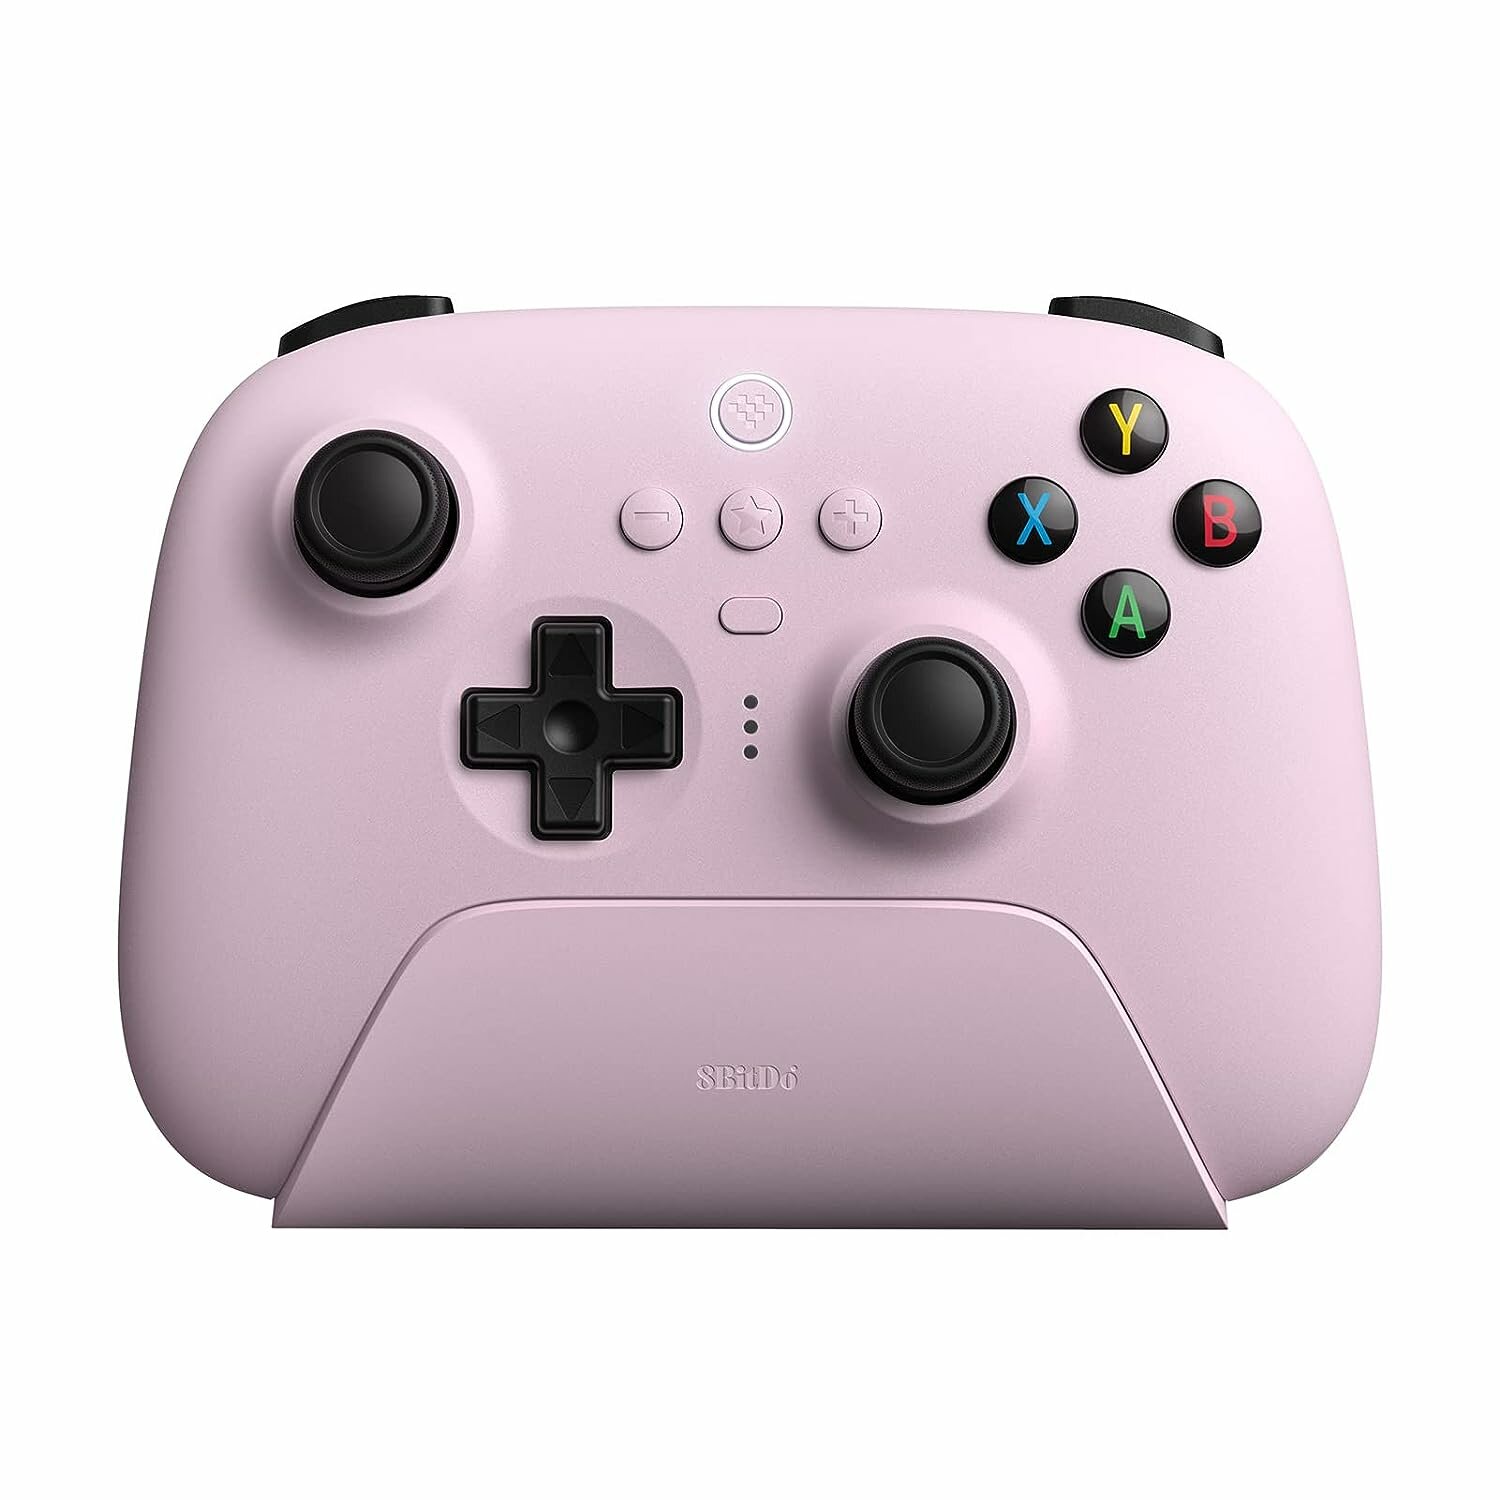 Беспроводной игровой контроллер 8BitDo Ultimate 2.4G Controller, розовый